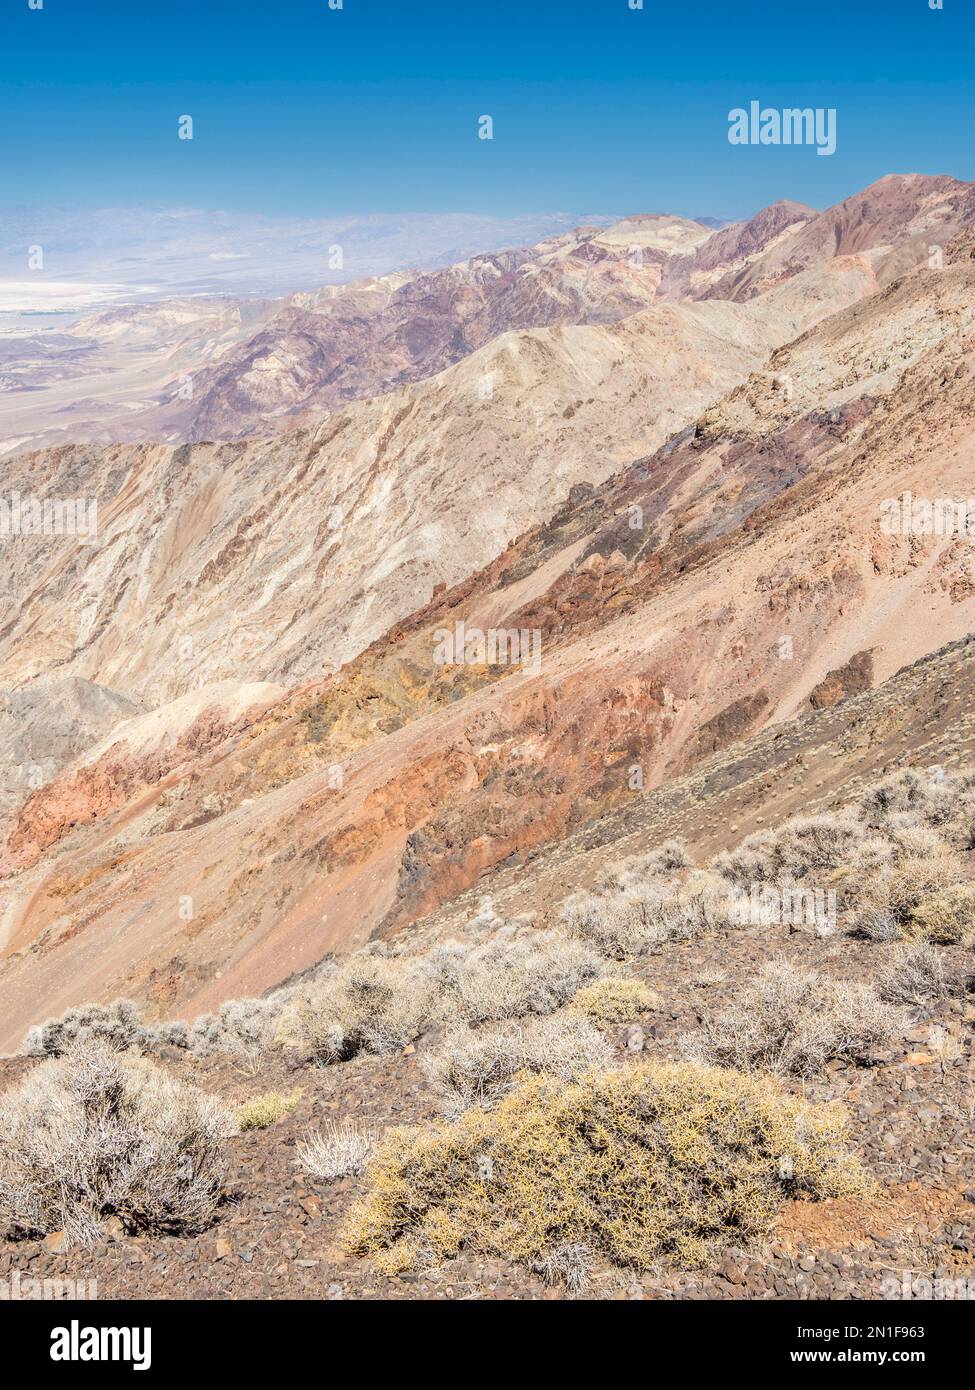 Vue vers le nord depuis Dante's View dans le parc national de la Vallée de la mort, Californie, États-Unis d'Amérique, Amérique du Nord Banque D'Images